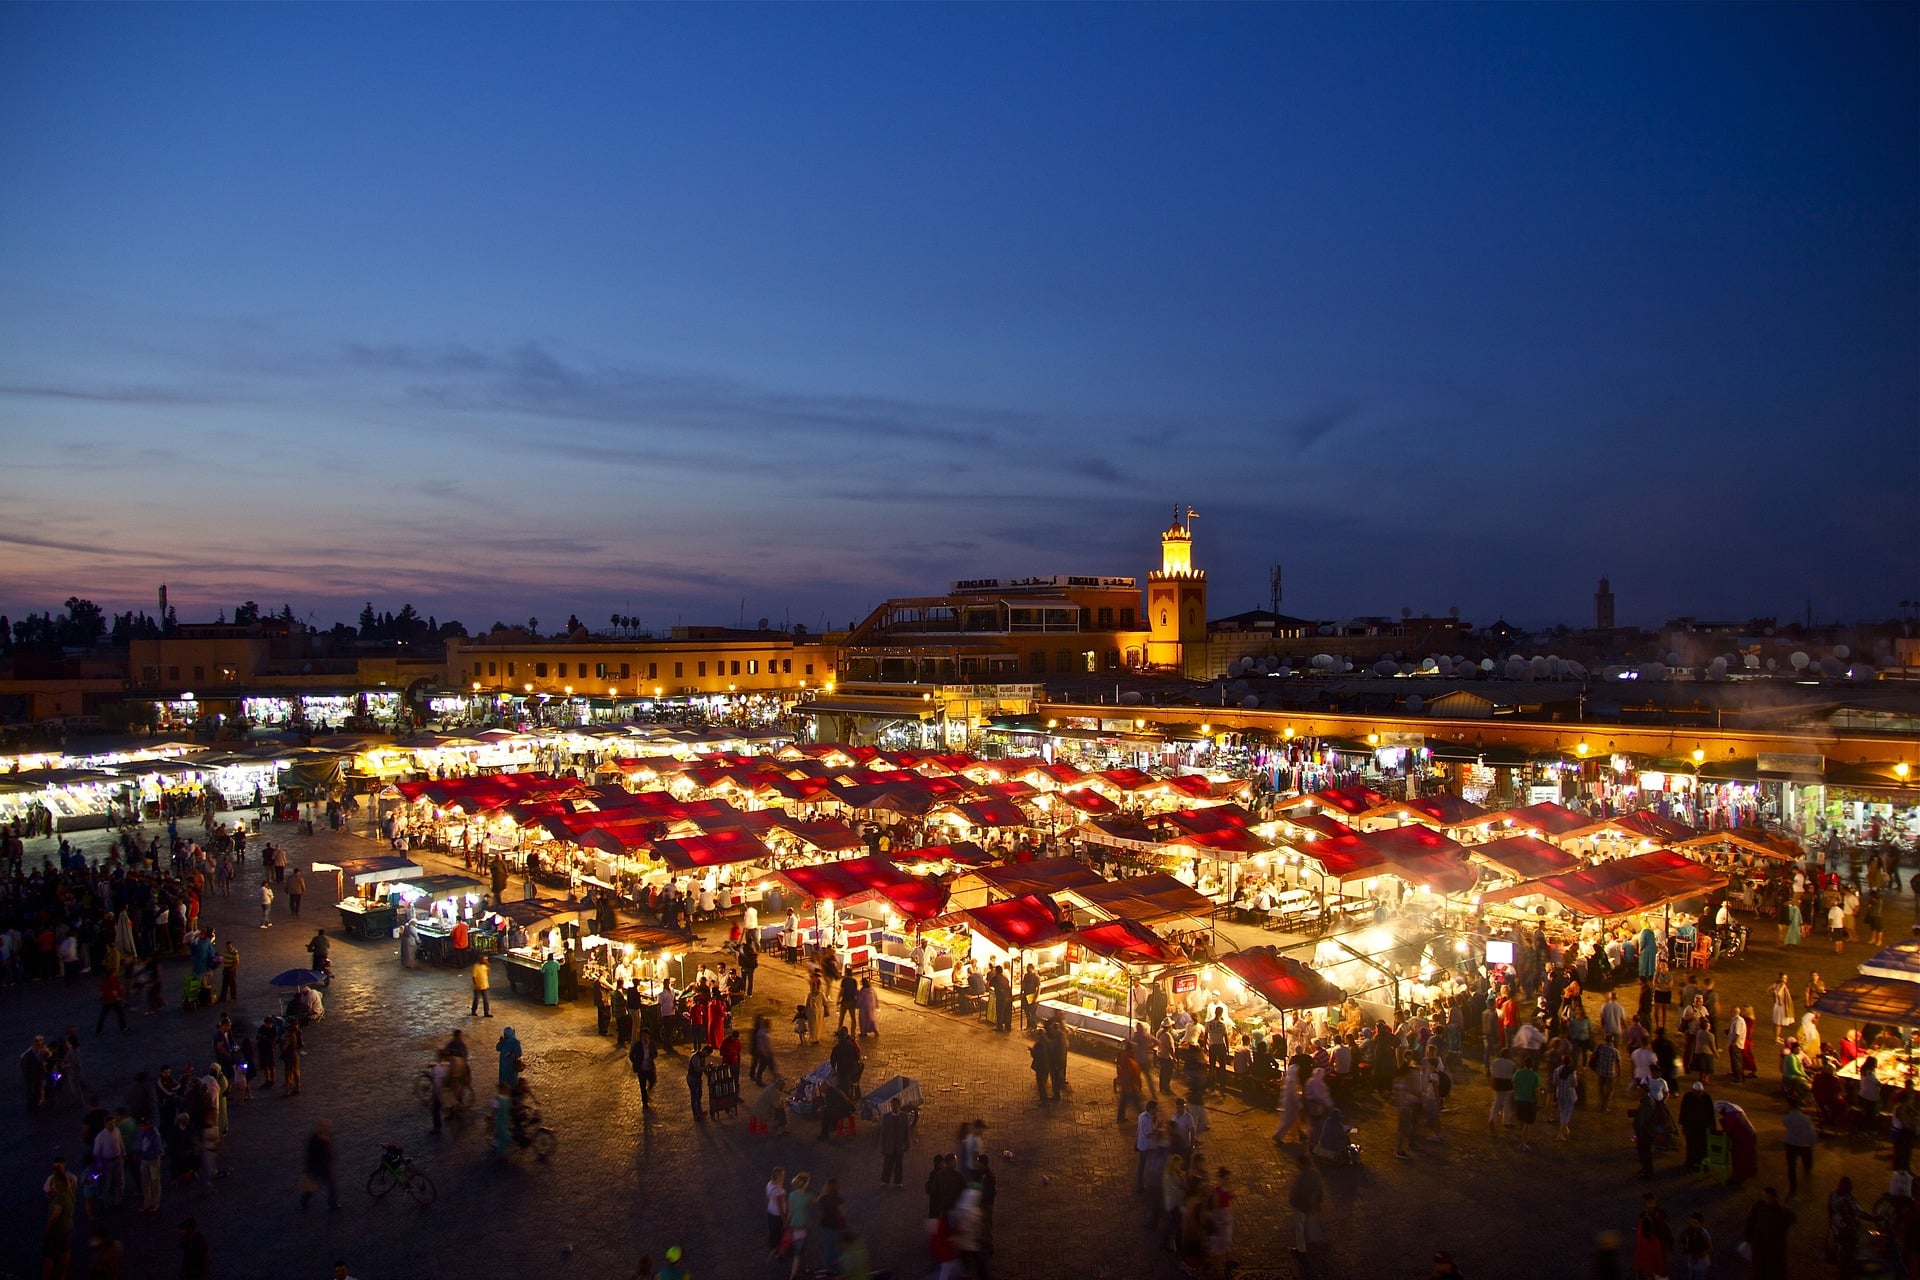 viaje organizado a marrakech 4 días